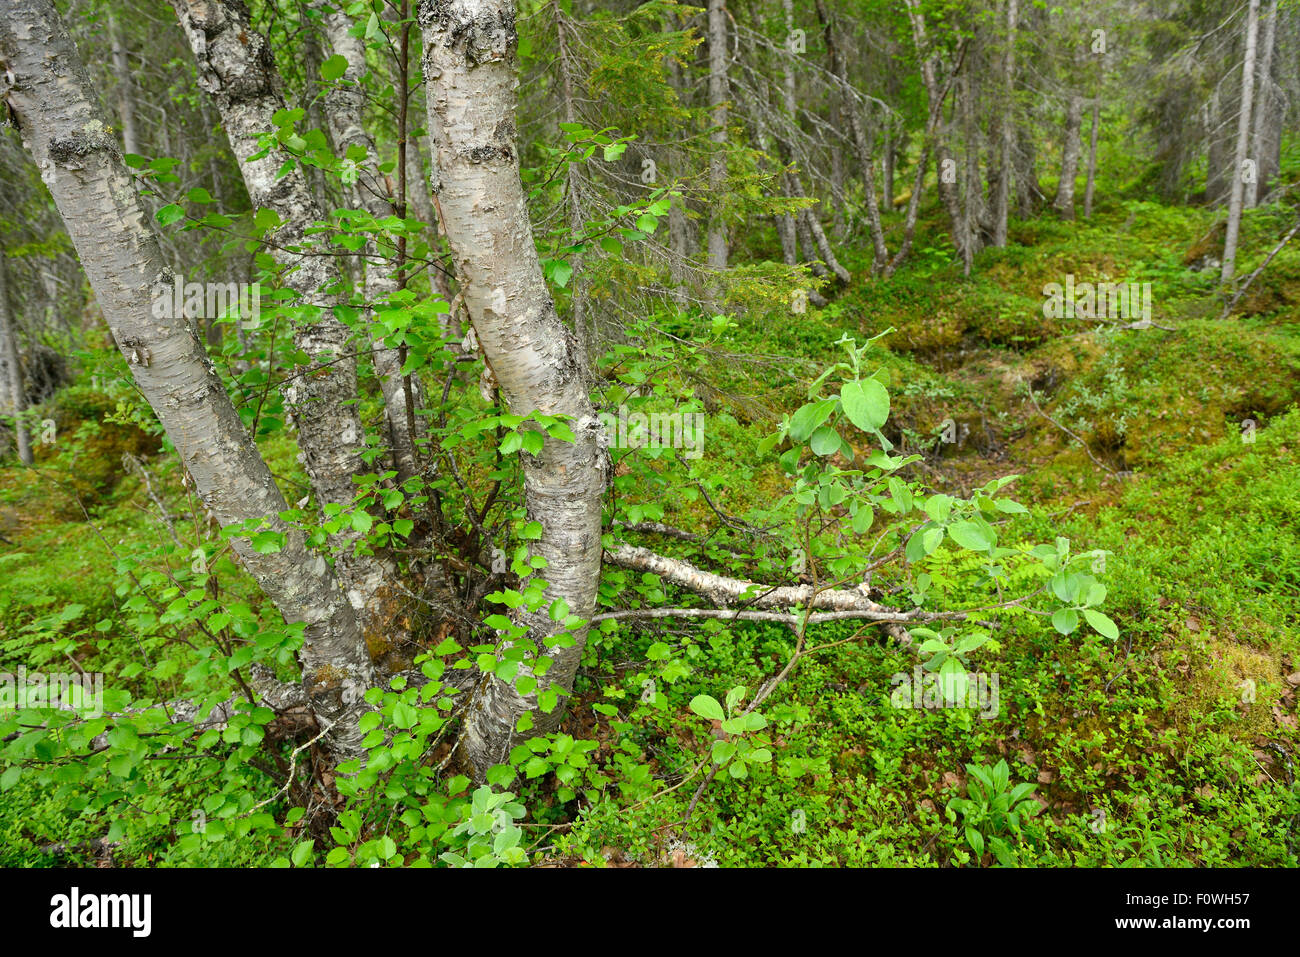 La taiga y la vegetación del sotobosque, el Parque Nacional Padjelanta, Kvikkjokk Laponia en el sitio del Patrimonio Mundial de la UNESCO, la mayor zona Rewilding Laponia, Laponia Norrbotten, Suecia, en junio de 2013. Foto de stock